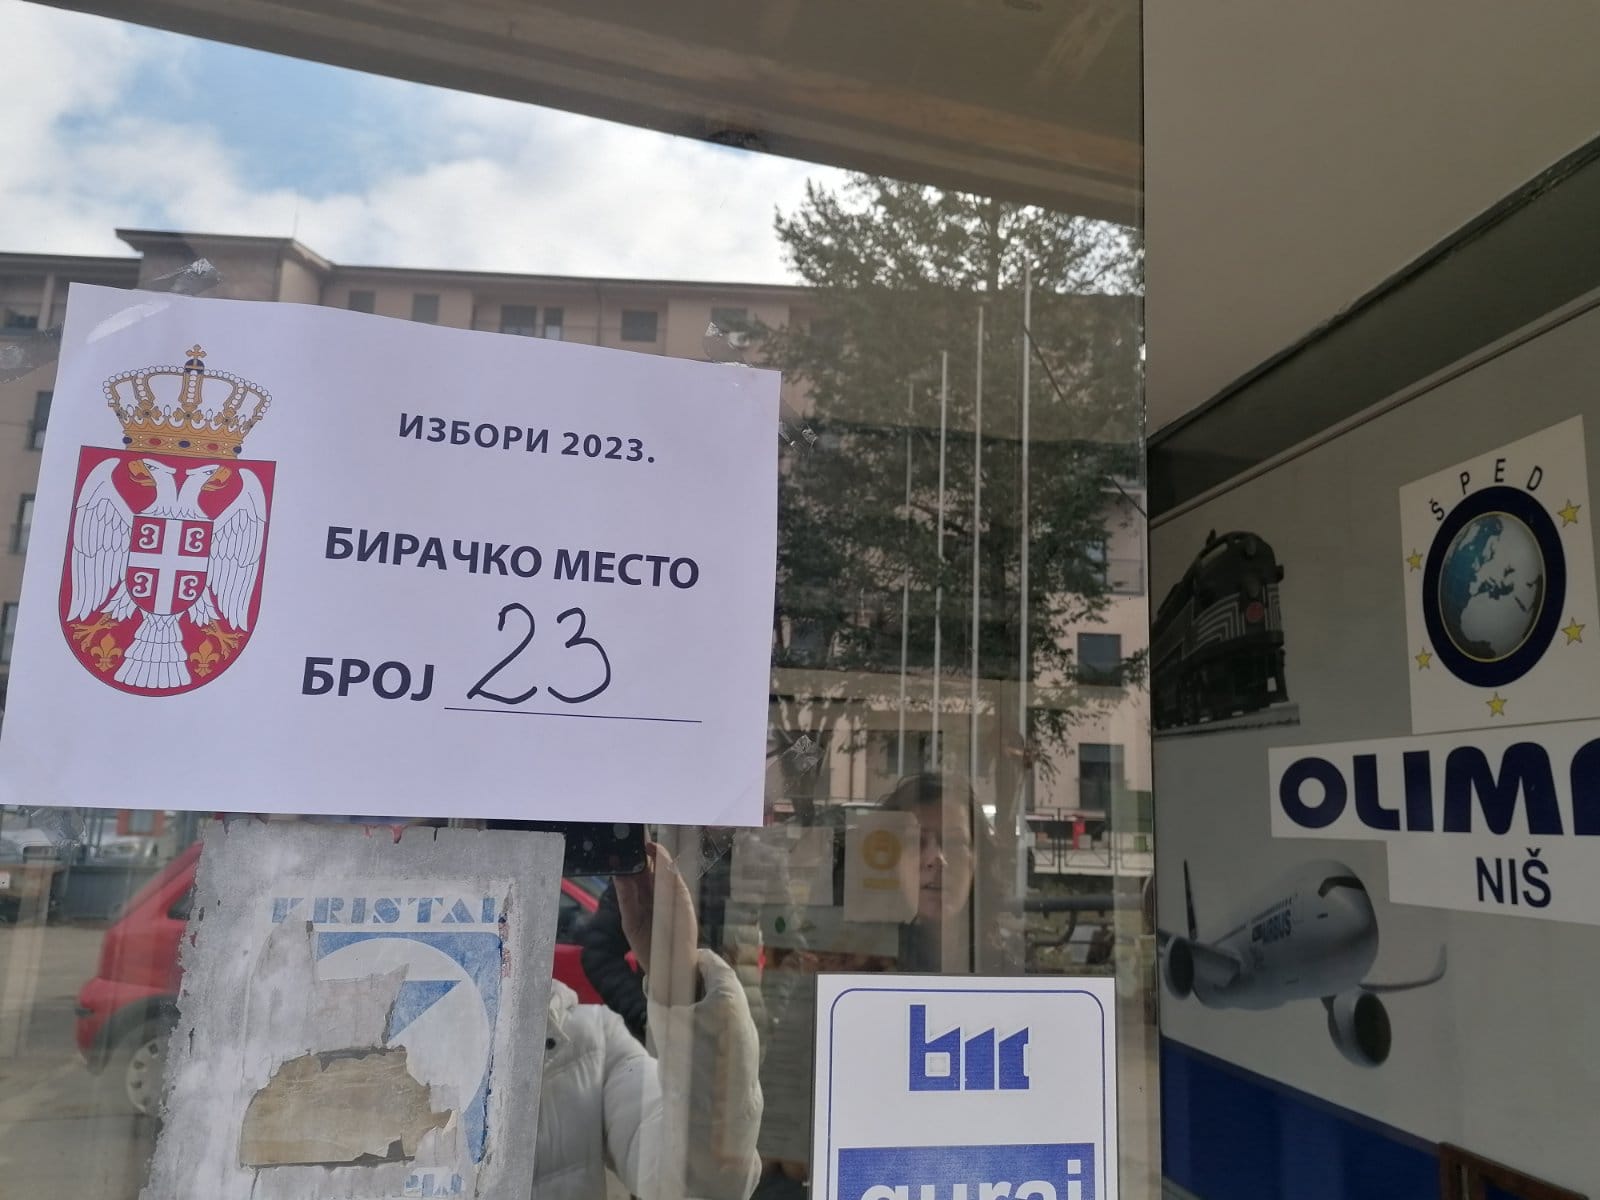 Čuvari iz redova Srbija protiv nasilјa još nisu dobili novac za izborni dan